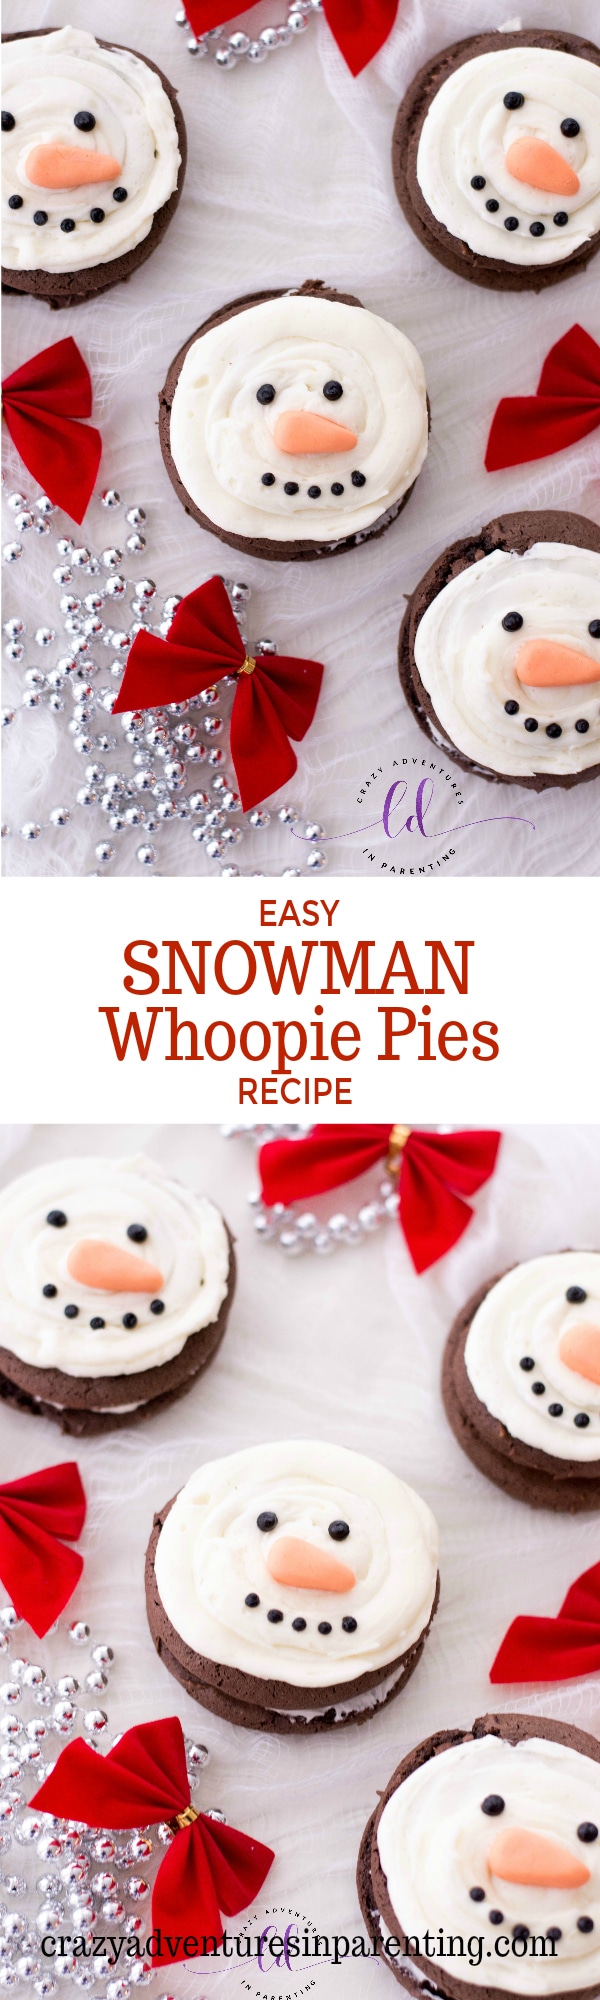 Easy Snowman Whoopie Pies Recipe